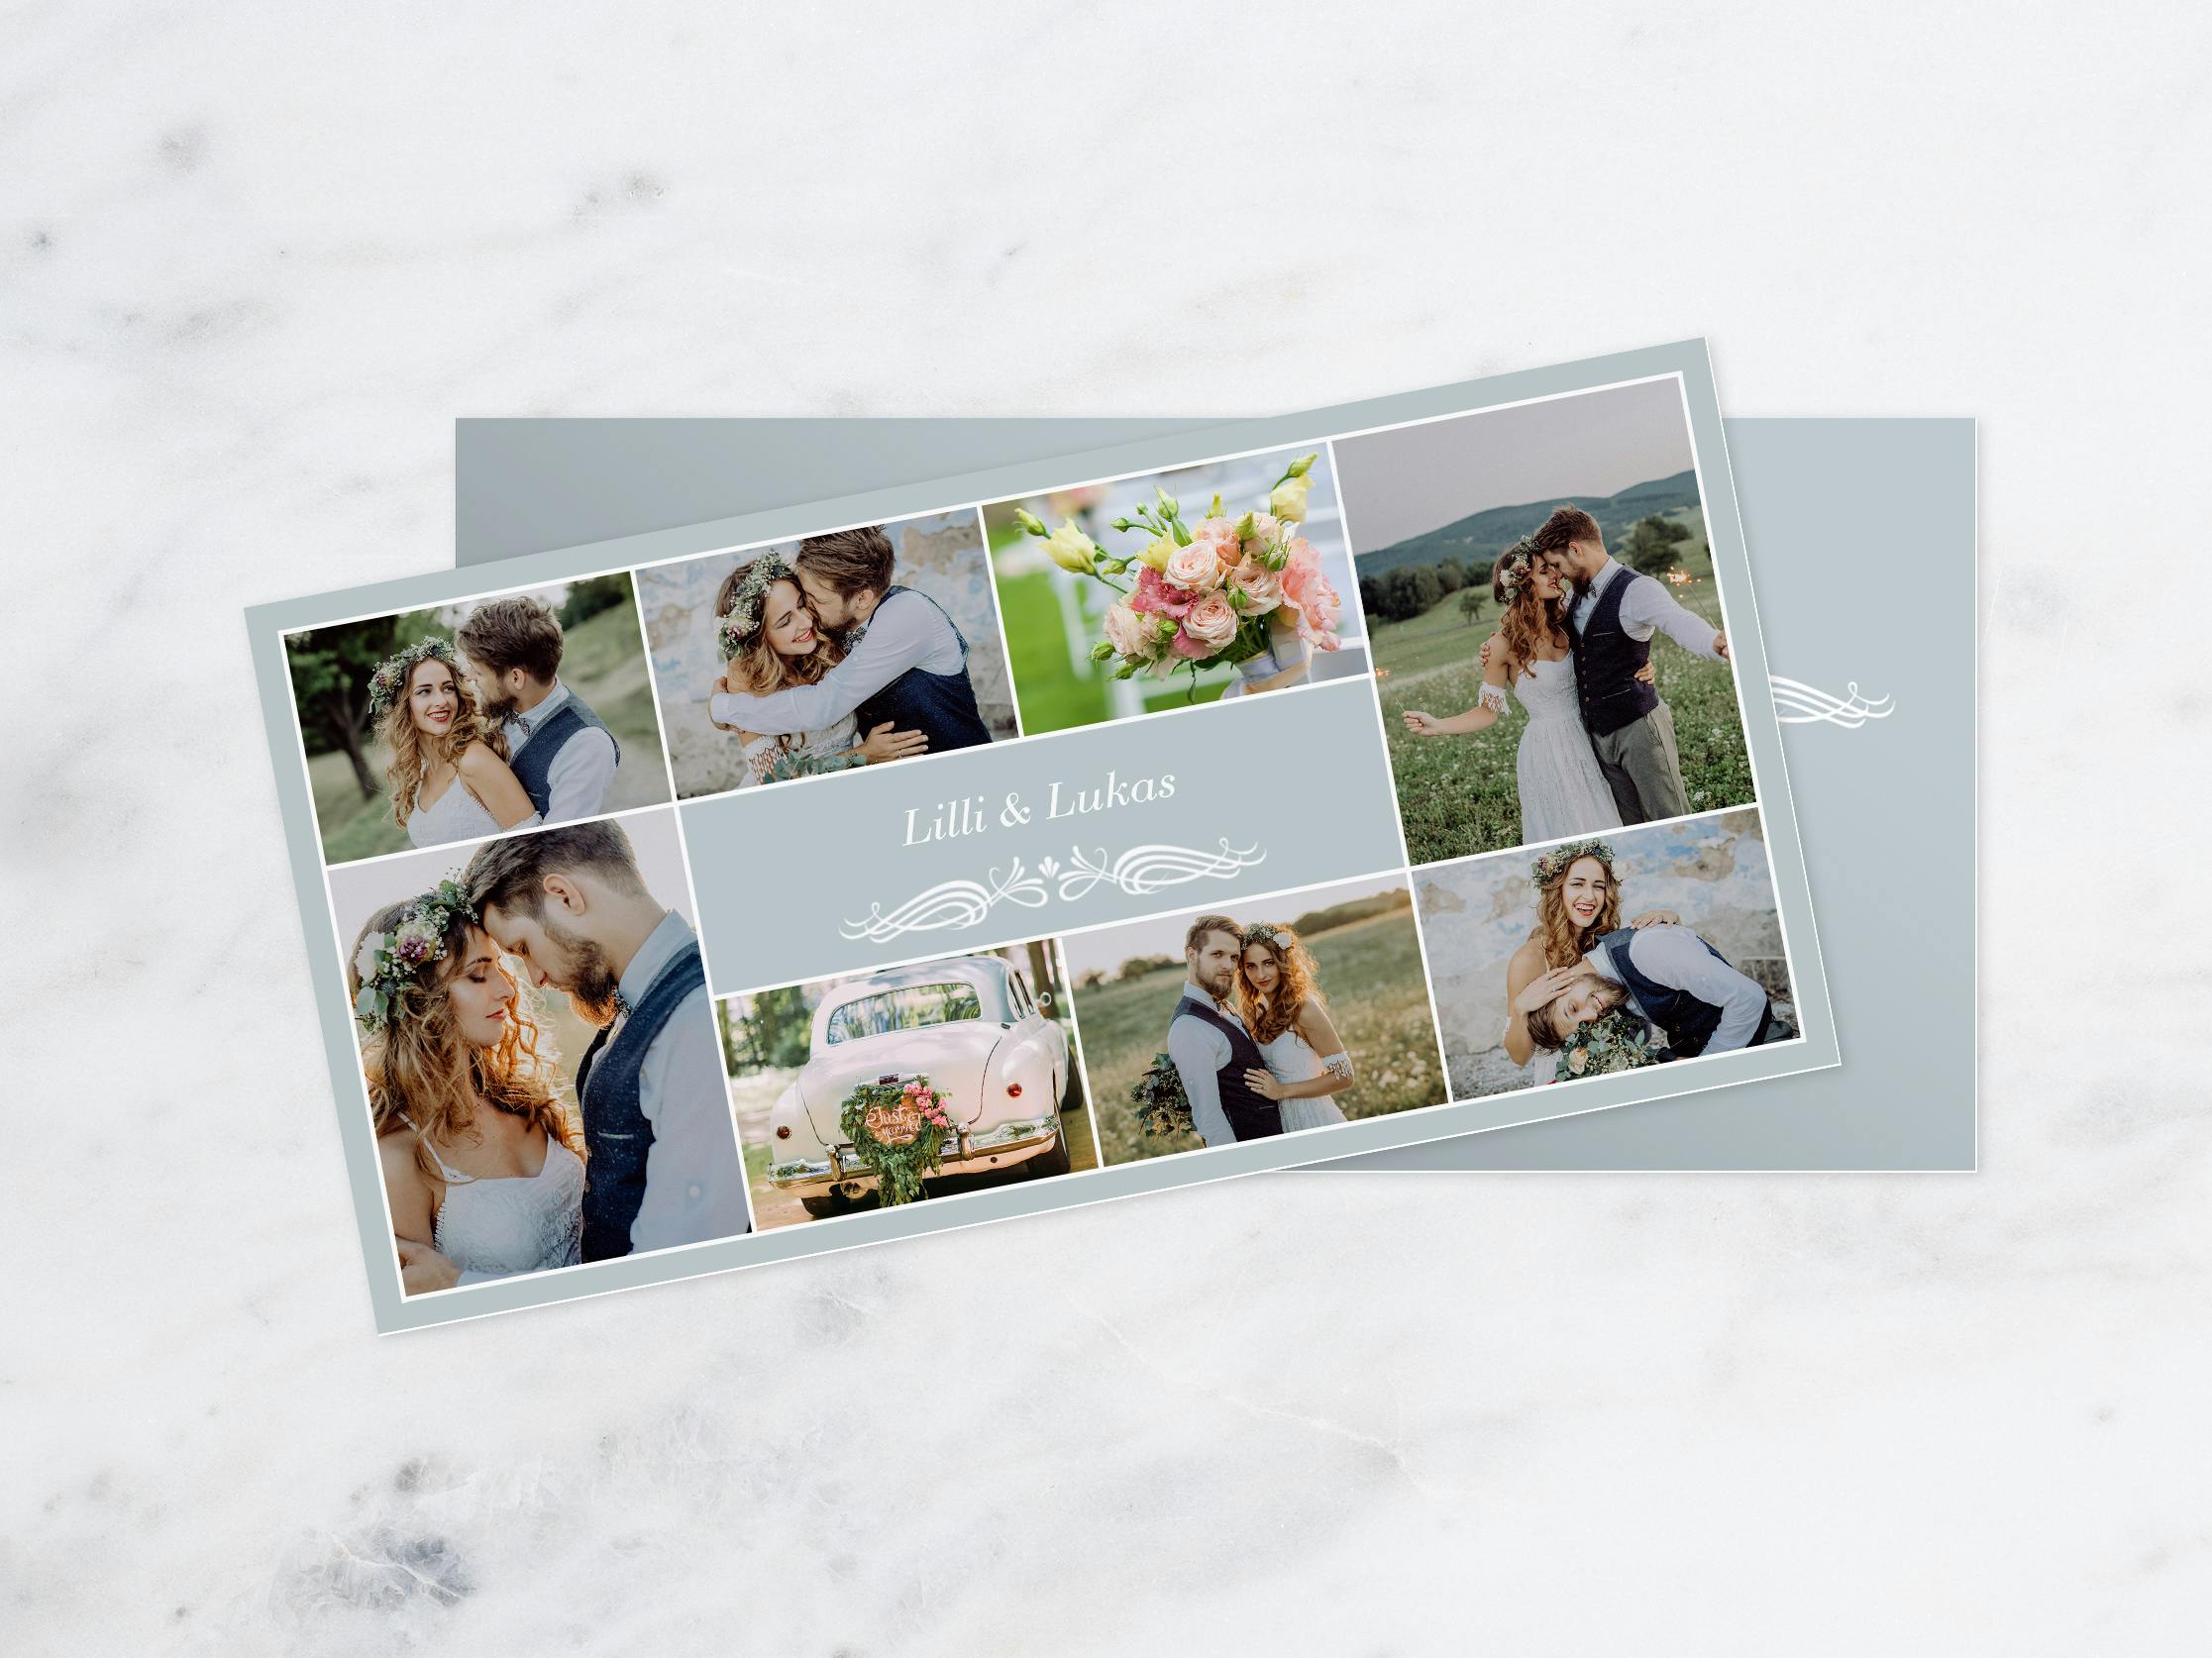 Wenskaarten met foto's van een bruiloft en de tekst 'Lilli & Lukas'